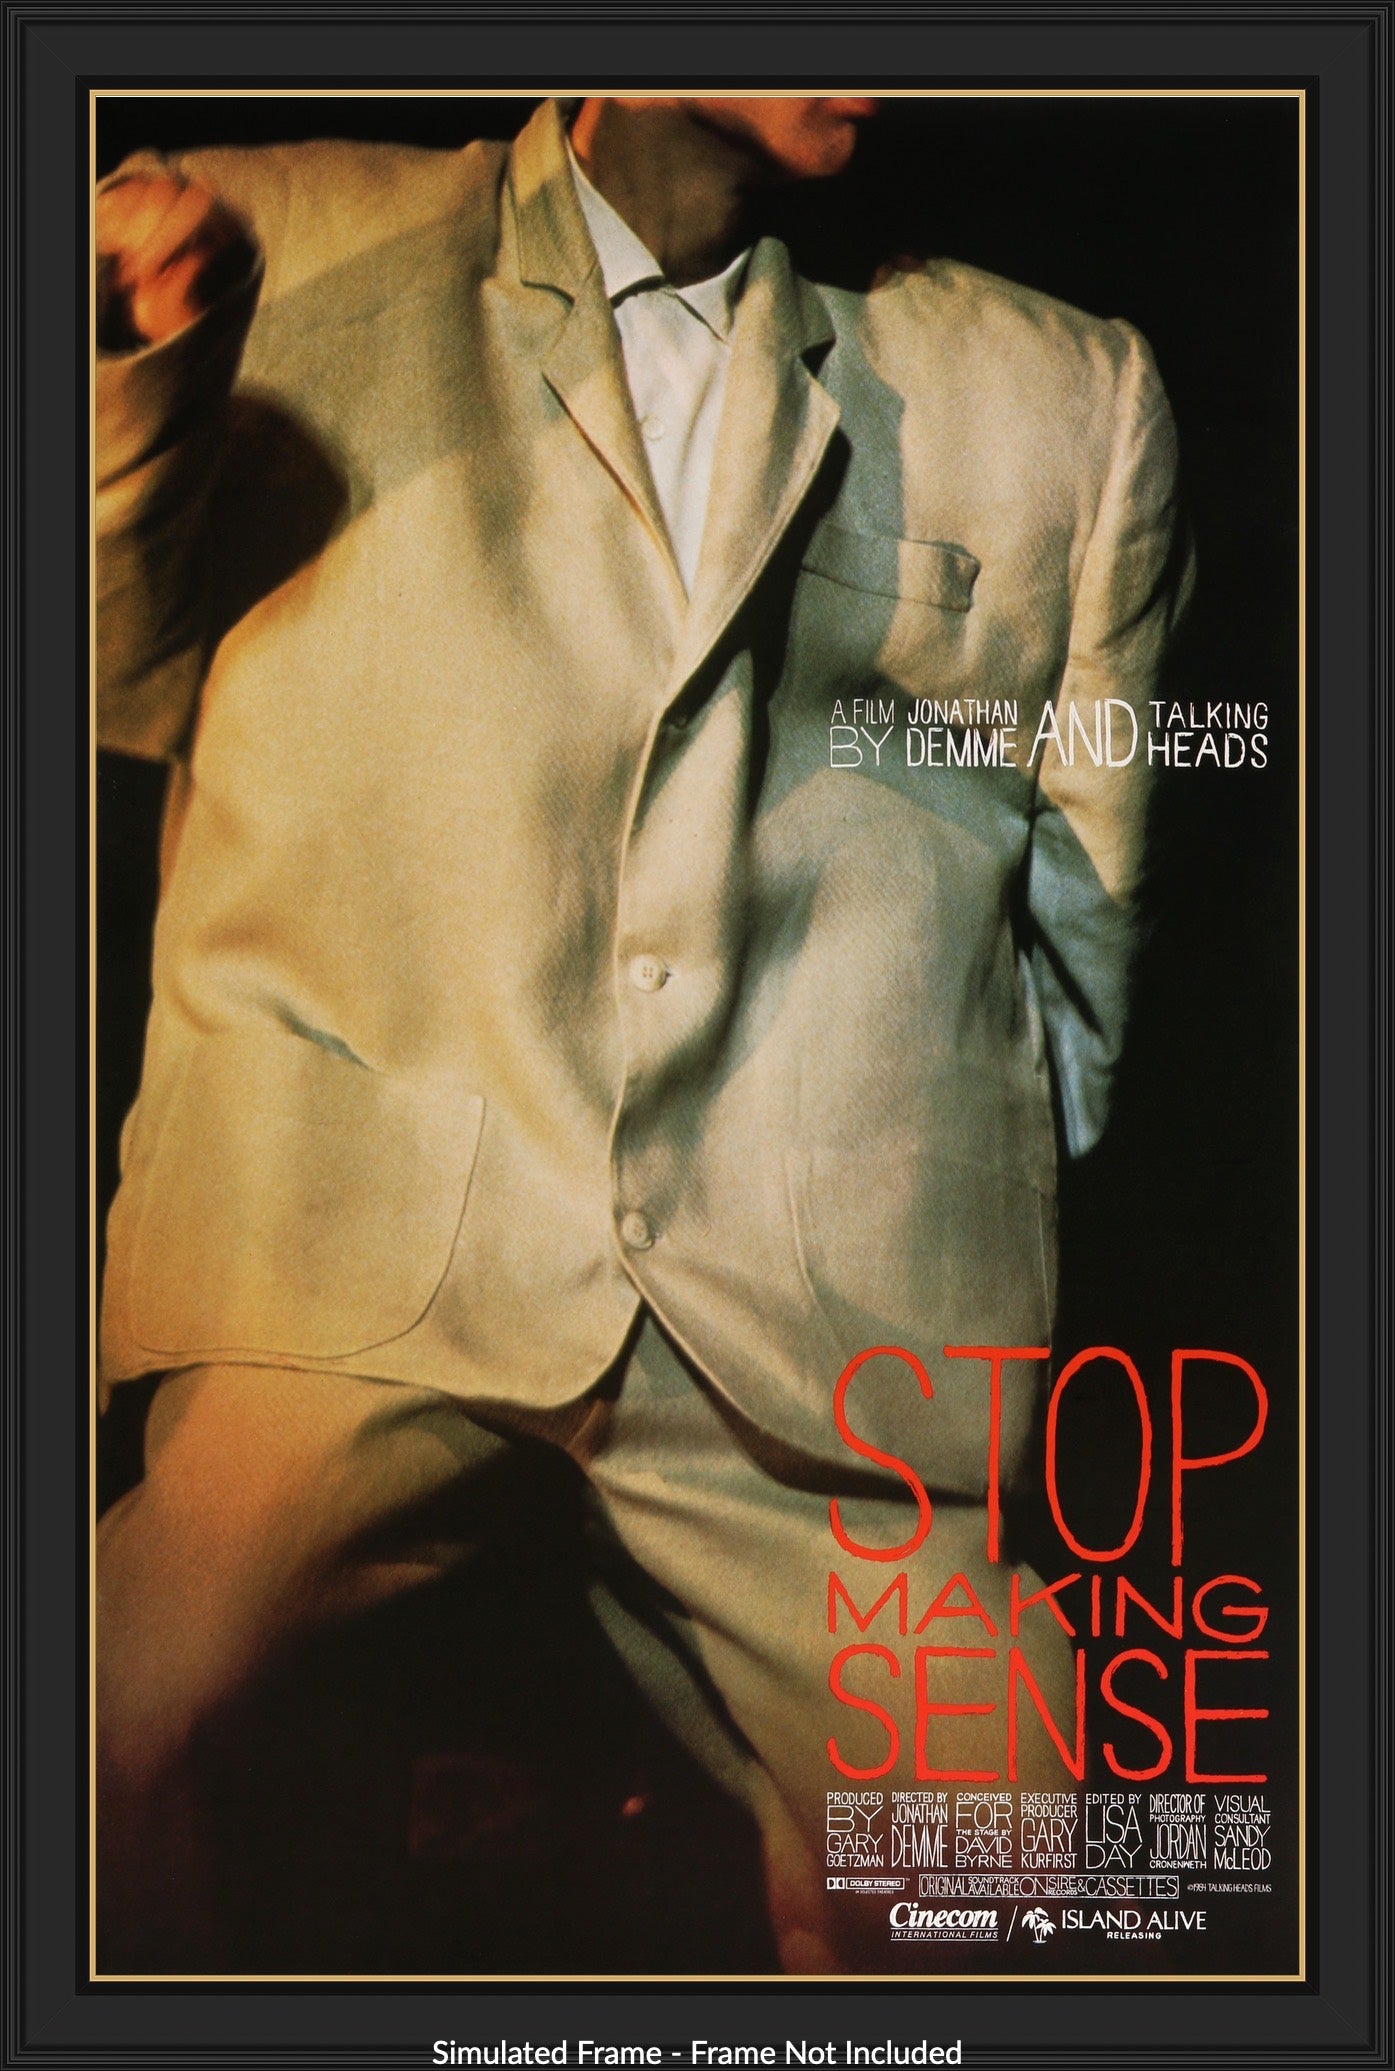 Stop Making Sense (1984) original movie poster for sale at Original Film Art